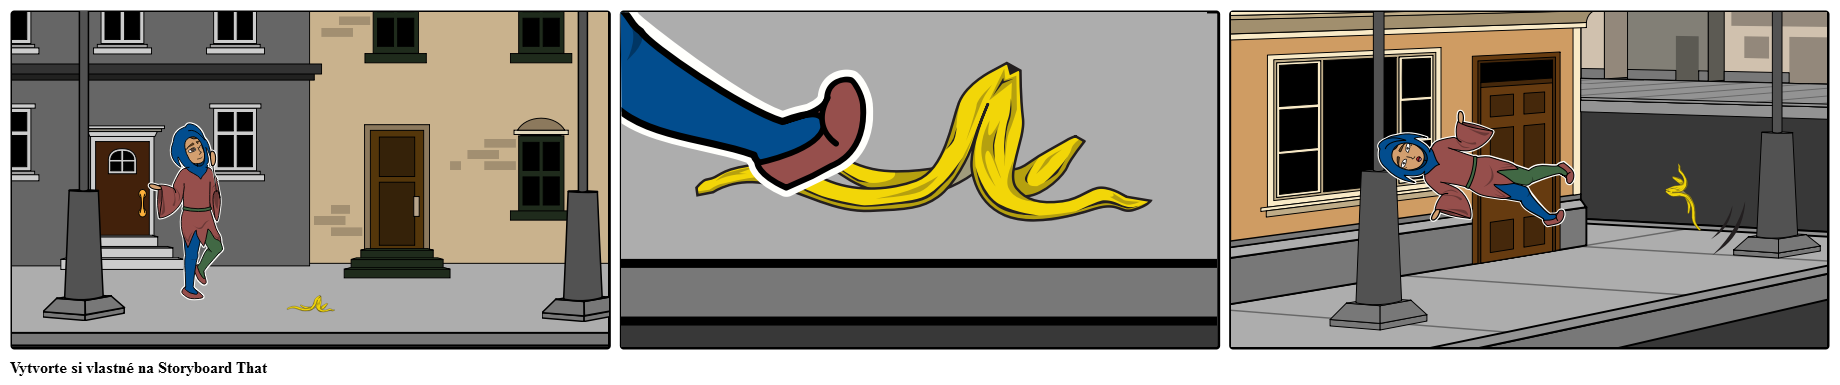 Jester skĺzne na banánovú kôru